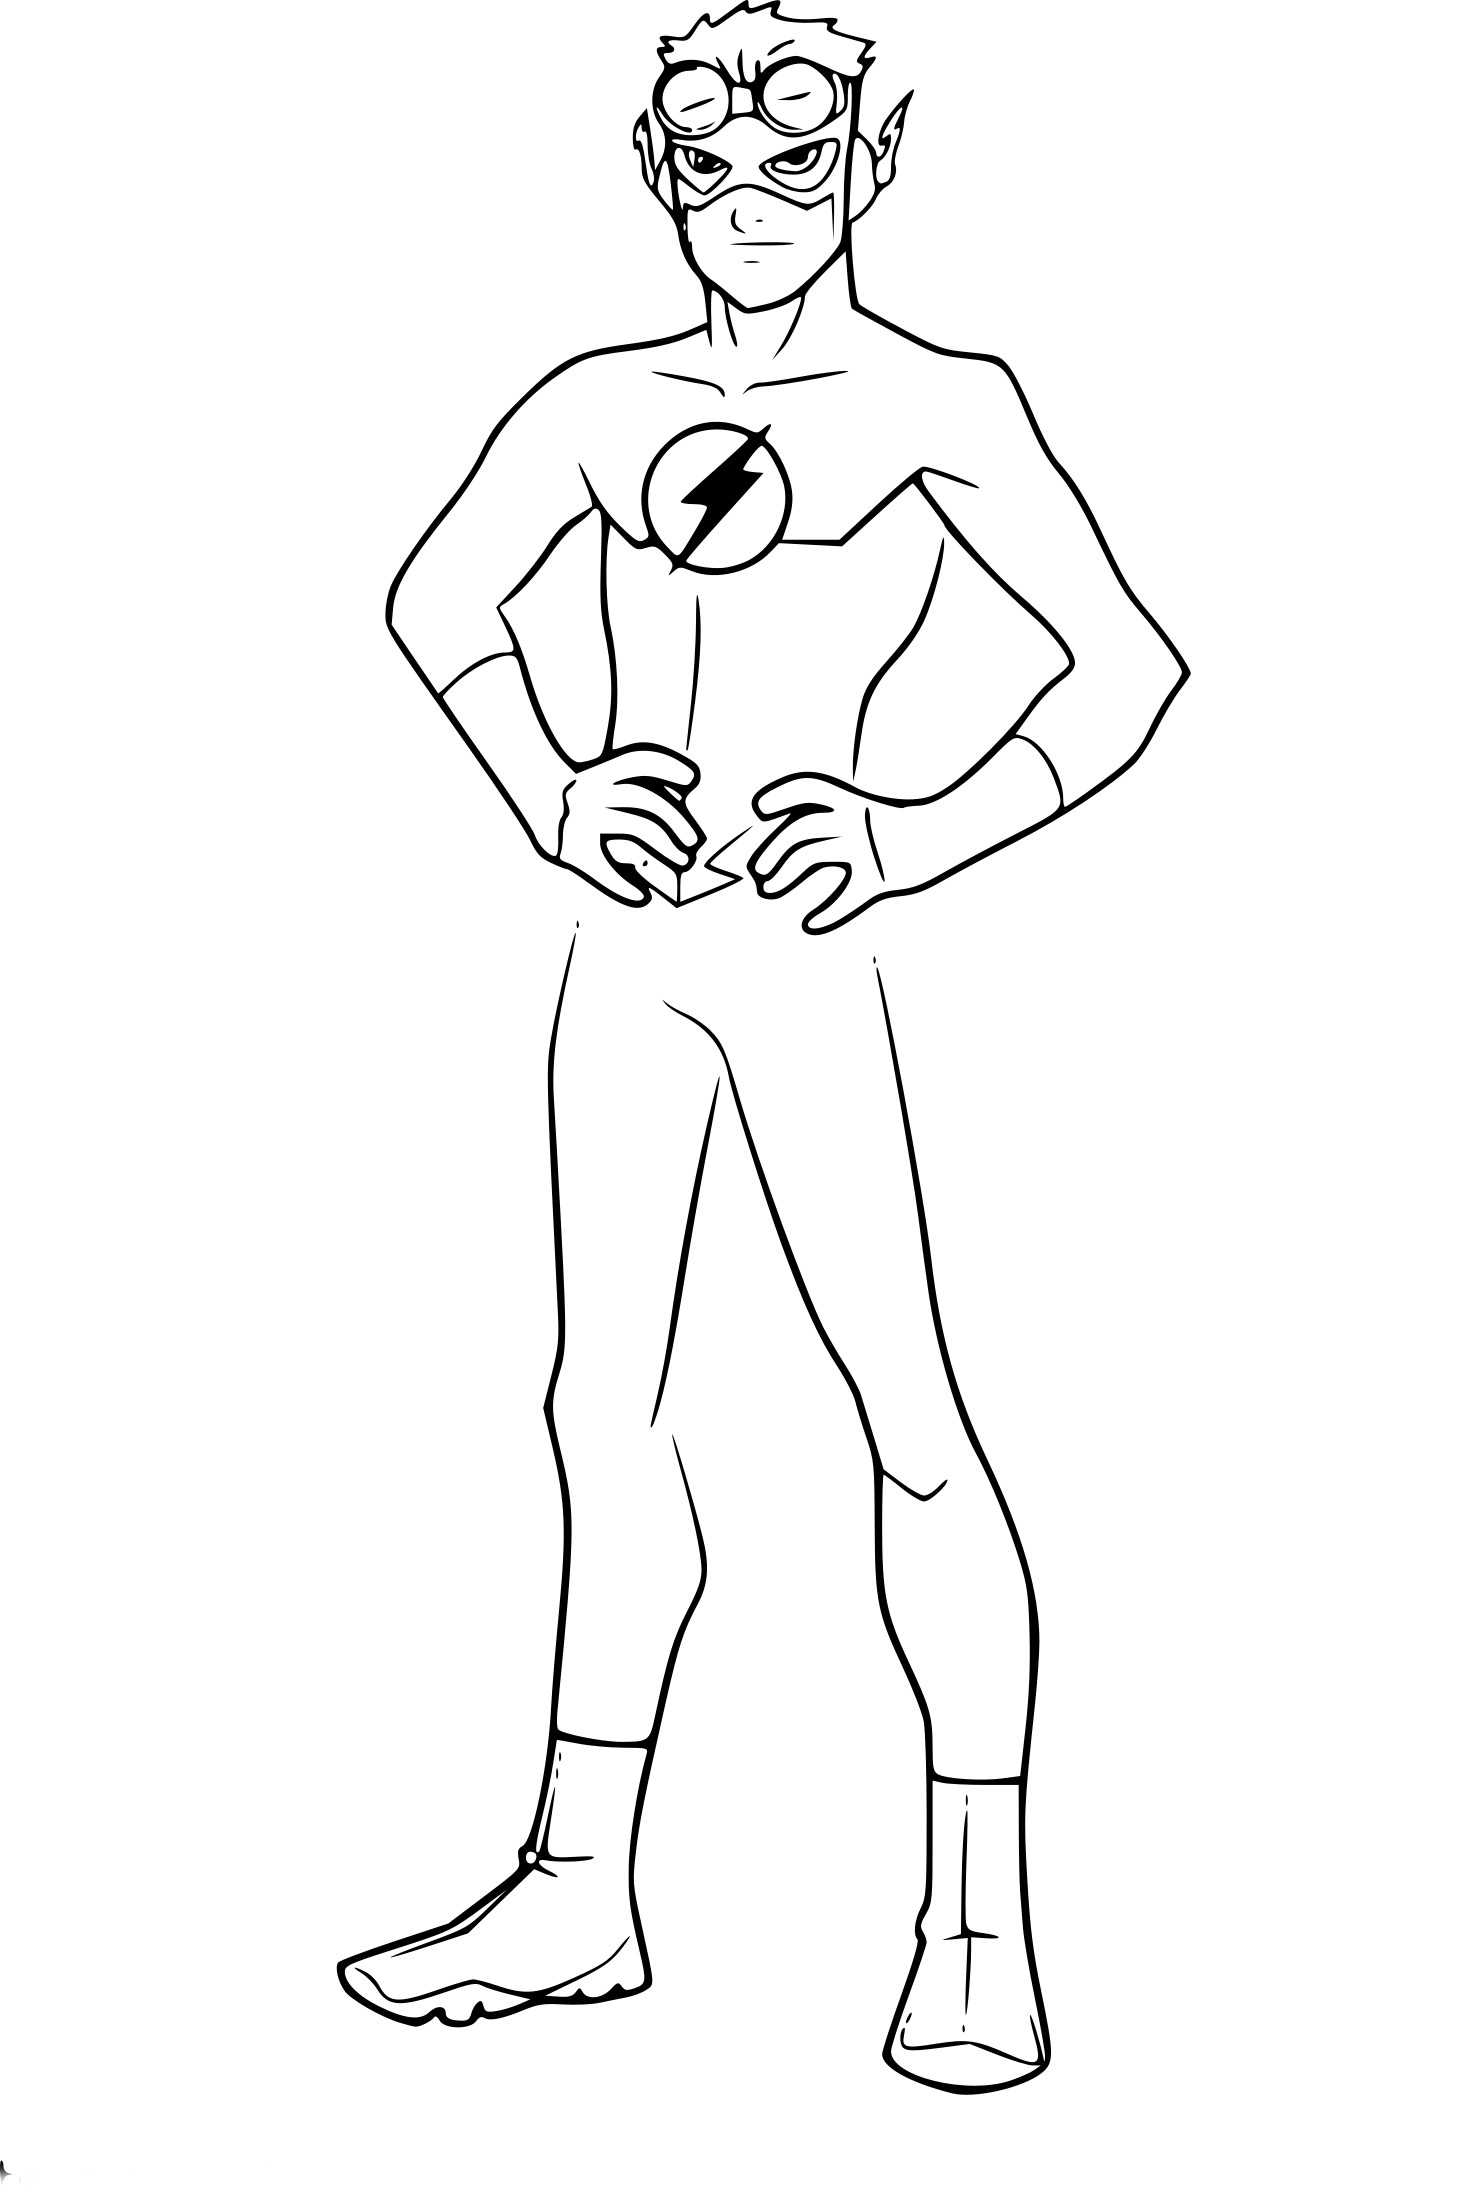 Disegno di Kid Flash da colorare